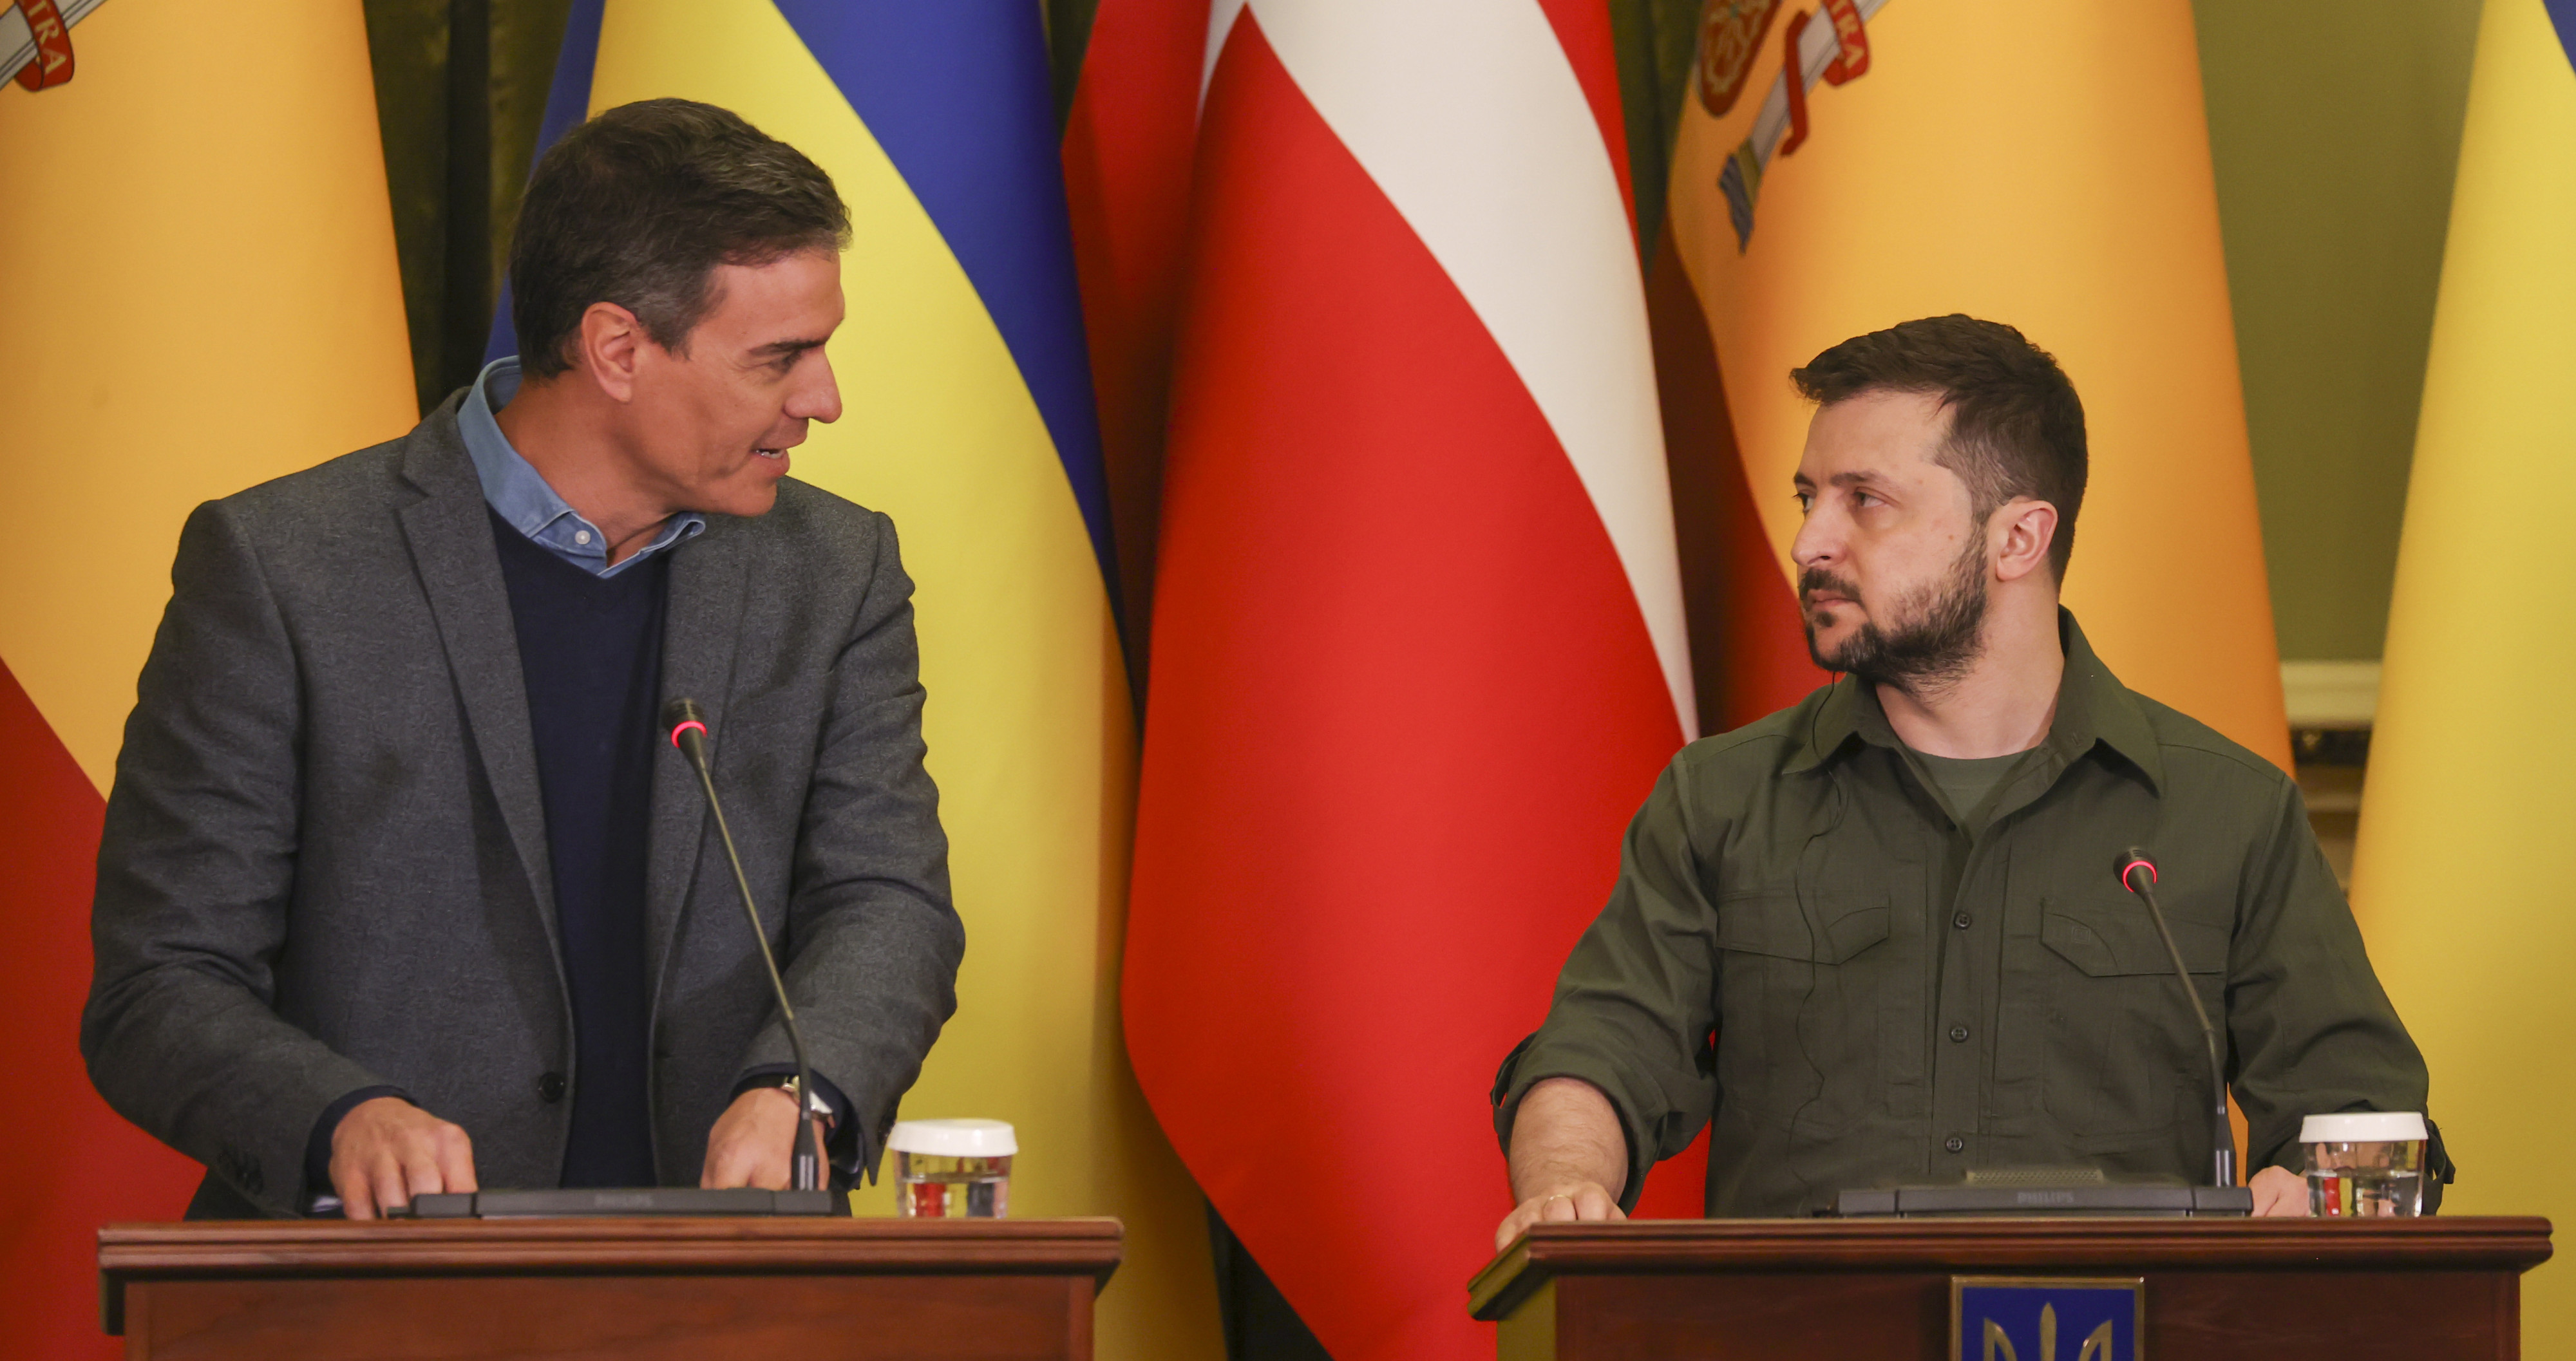  El presidente del Gobierno, Pedro Sánchez, y el presidente de Ucrania, Volodímir Zelenski, durante la rueda de prensa ofrecida al término de la reunión que ambos han mantenido este jueves en Kiev / EFE